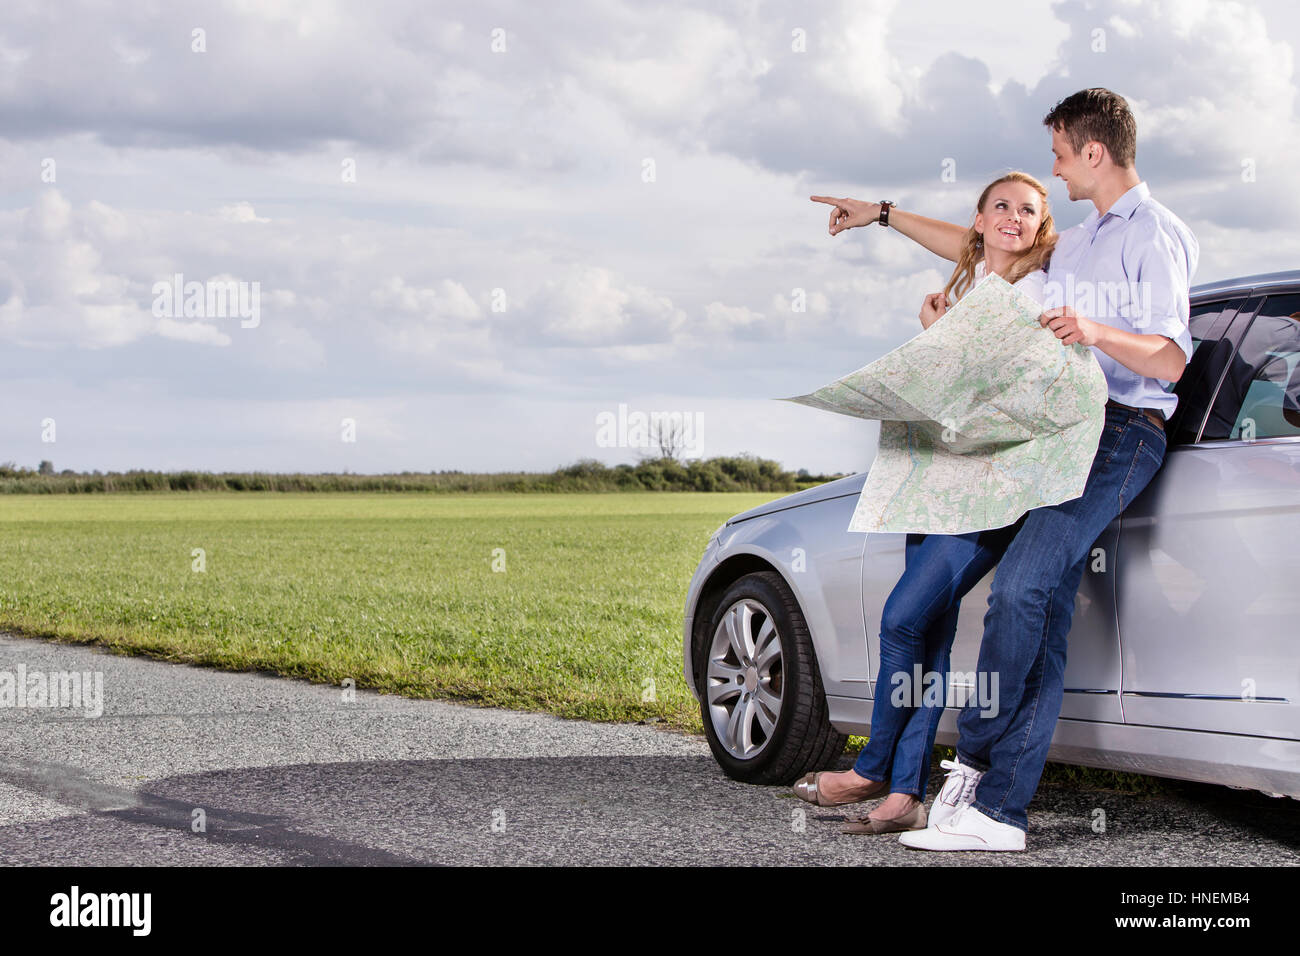 Lunghezza completa di coppia con mappa discutendo di direzione mentre appoggiato su auto in campagna Foto Stock